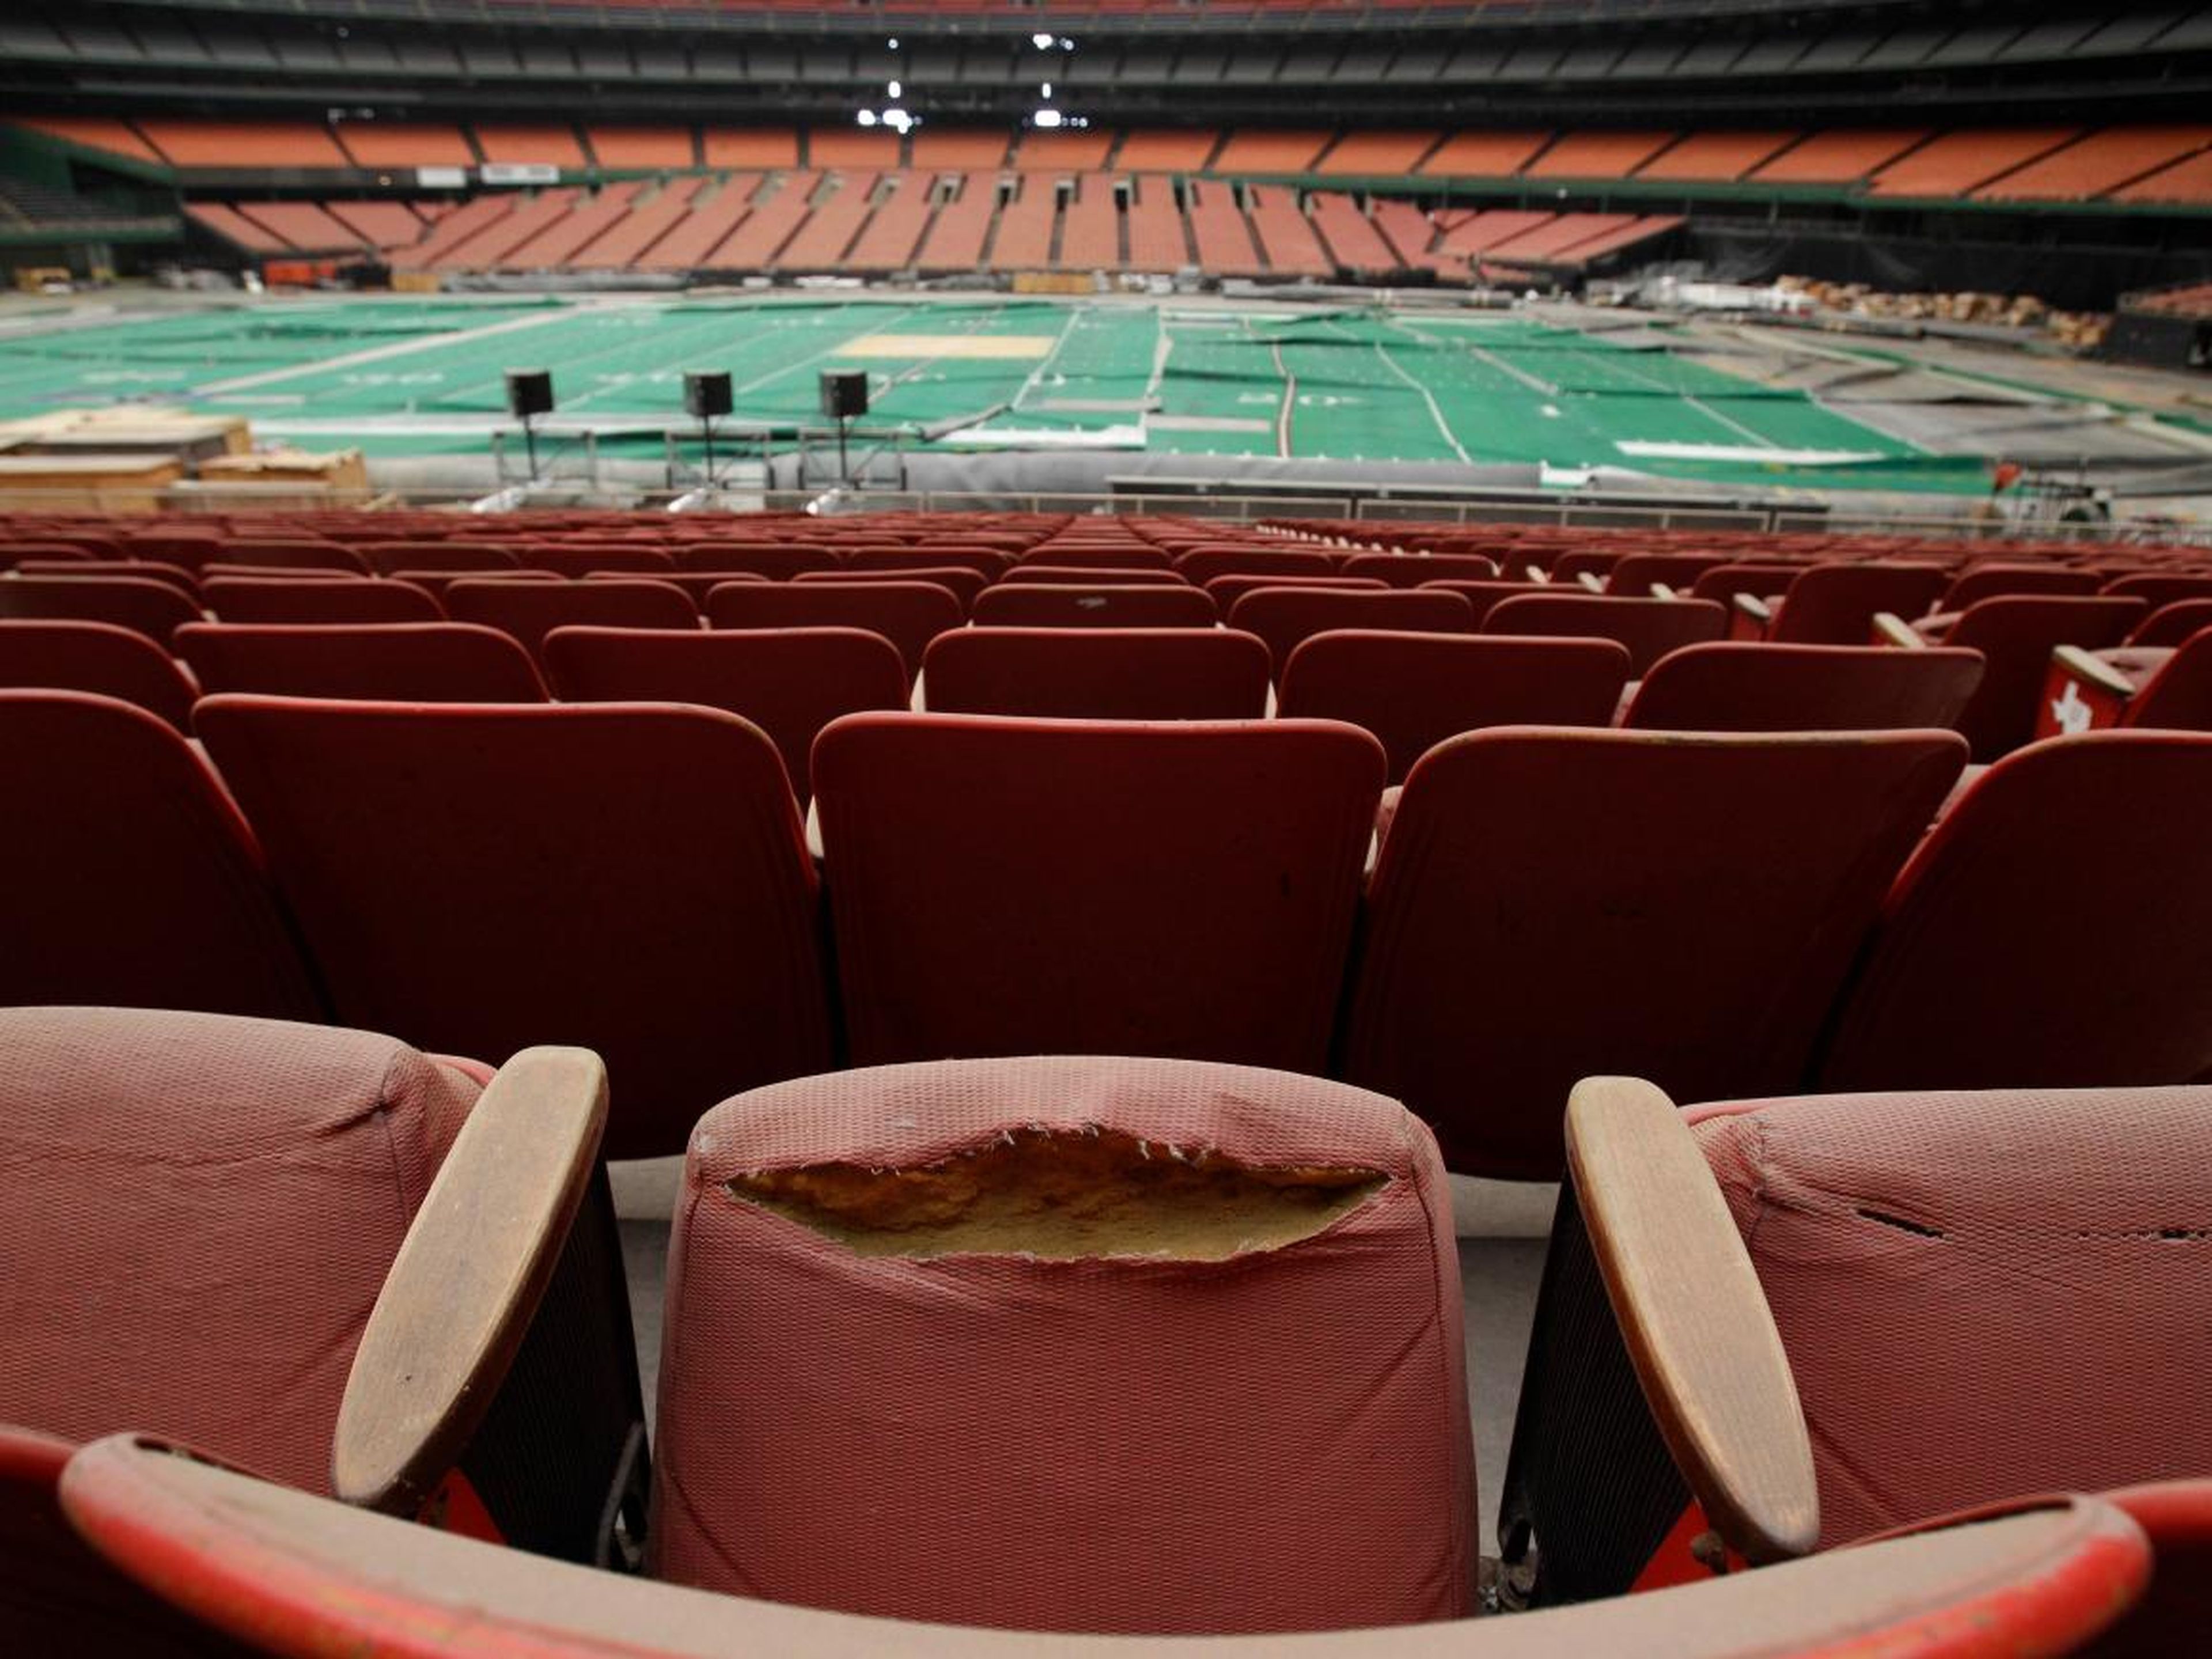 Filas de asientos sucios y andrajosos en el "Houston Astrodome".